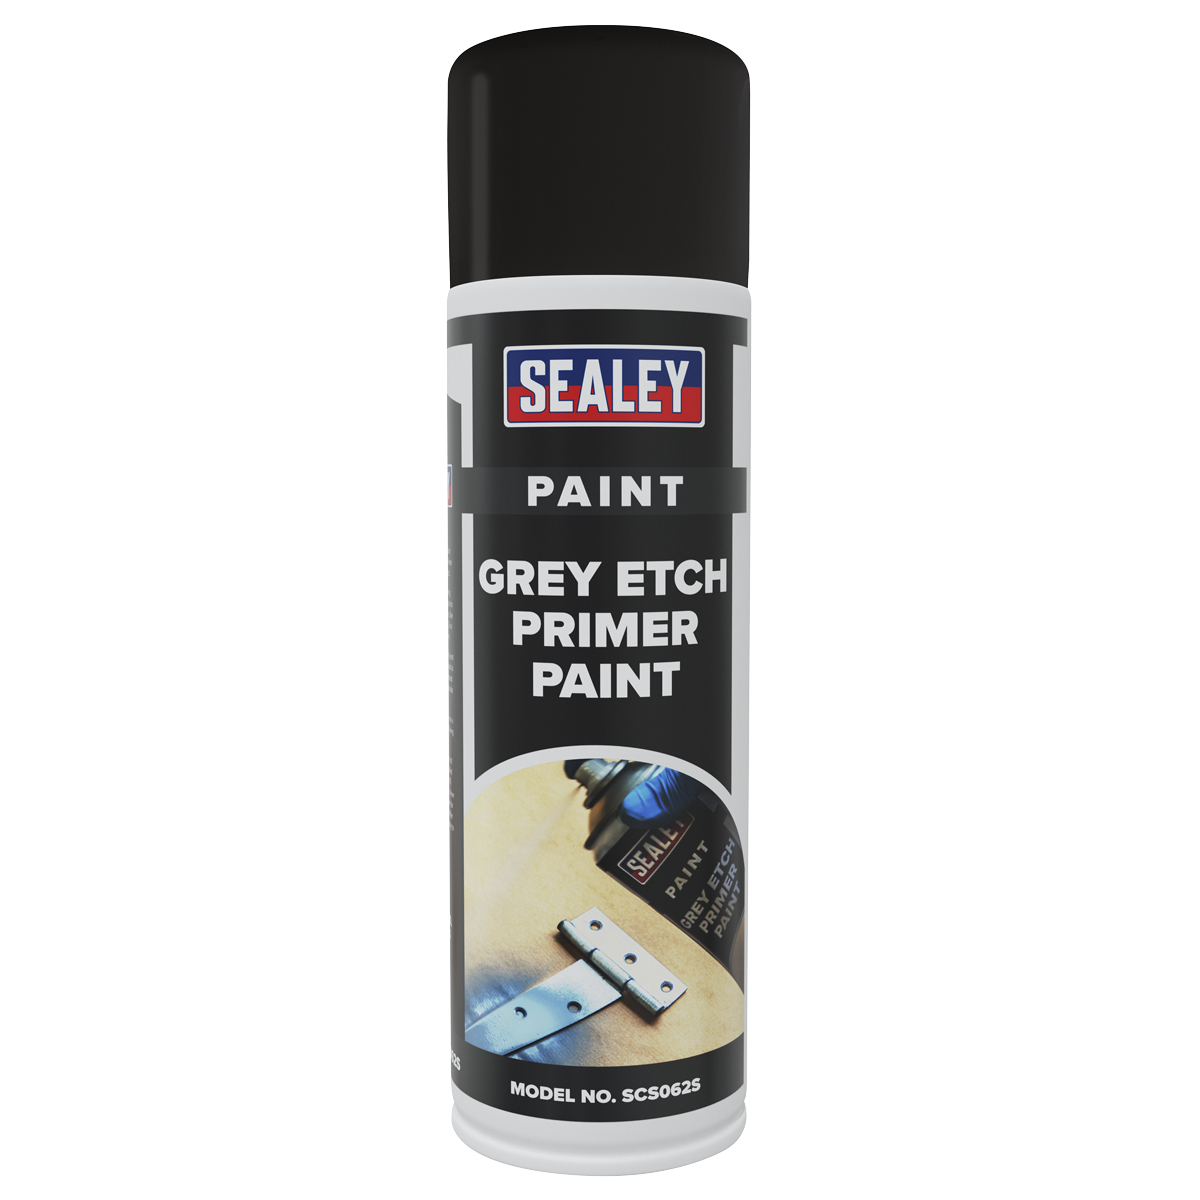 Grey Etch Primer Paint 500ml - SCS062S - Farming Parts